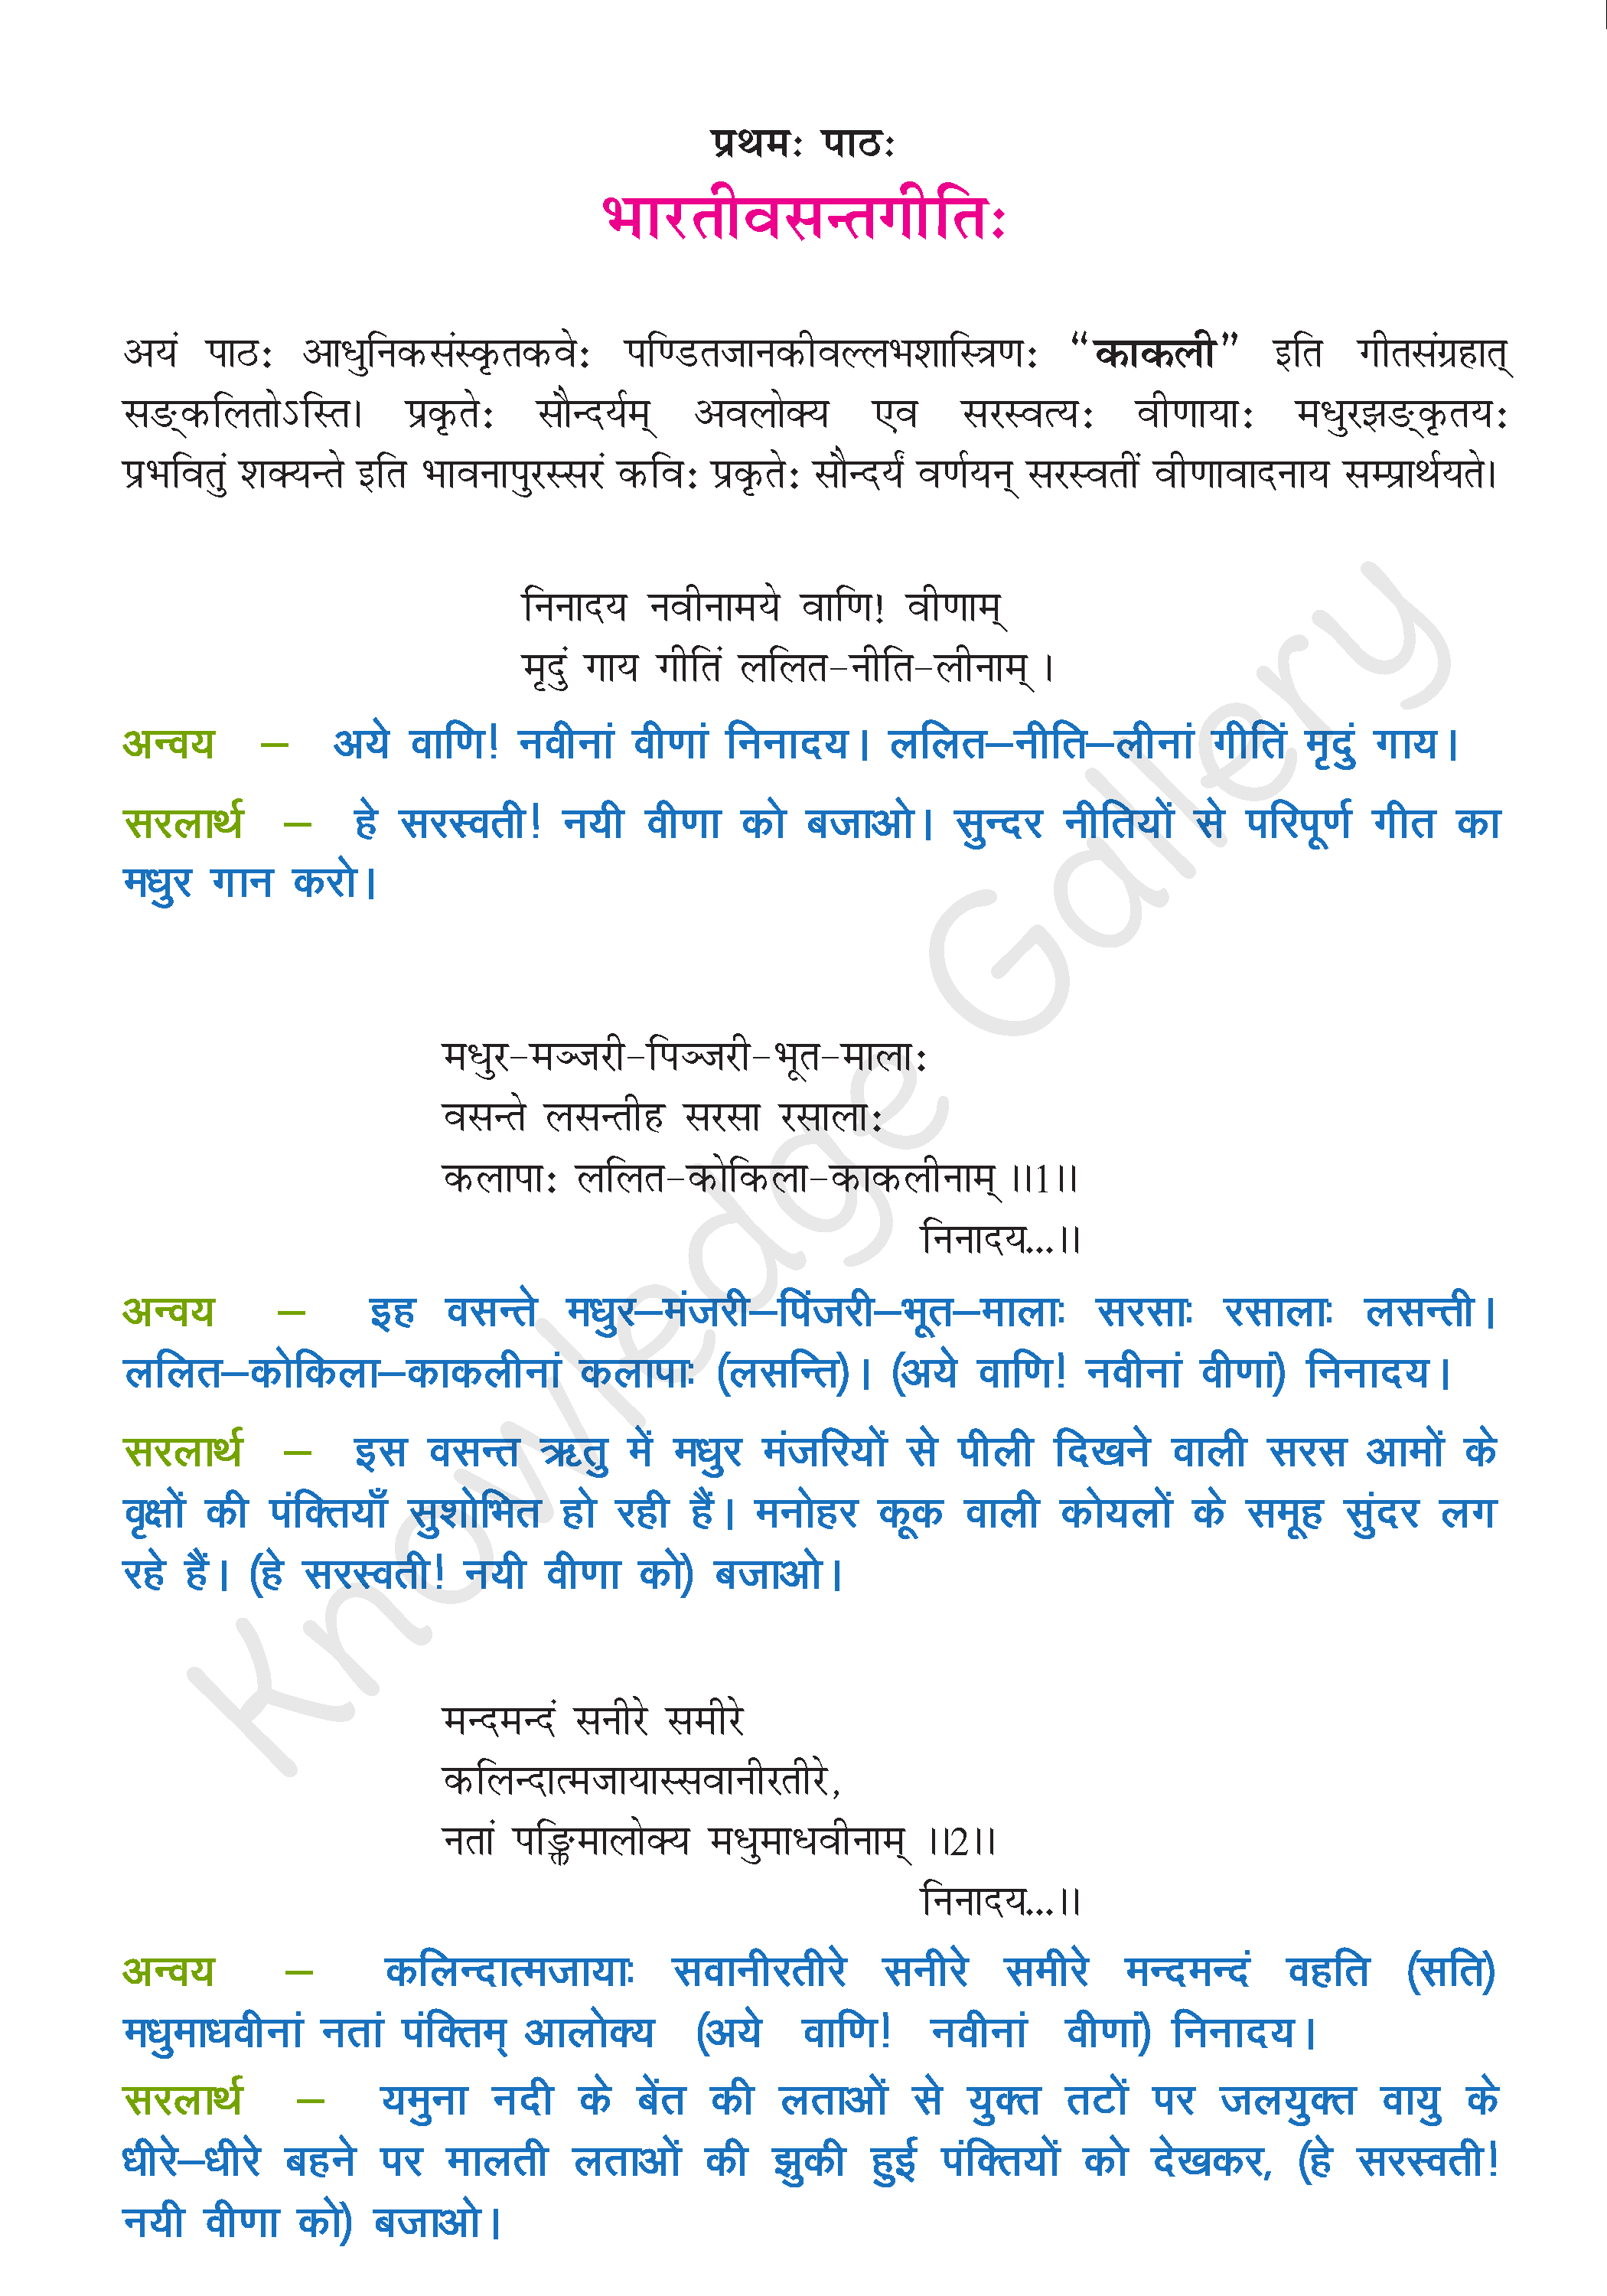 NCERT Solution For Class 9 Sanskrit Chapter 1 part 1